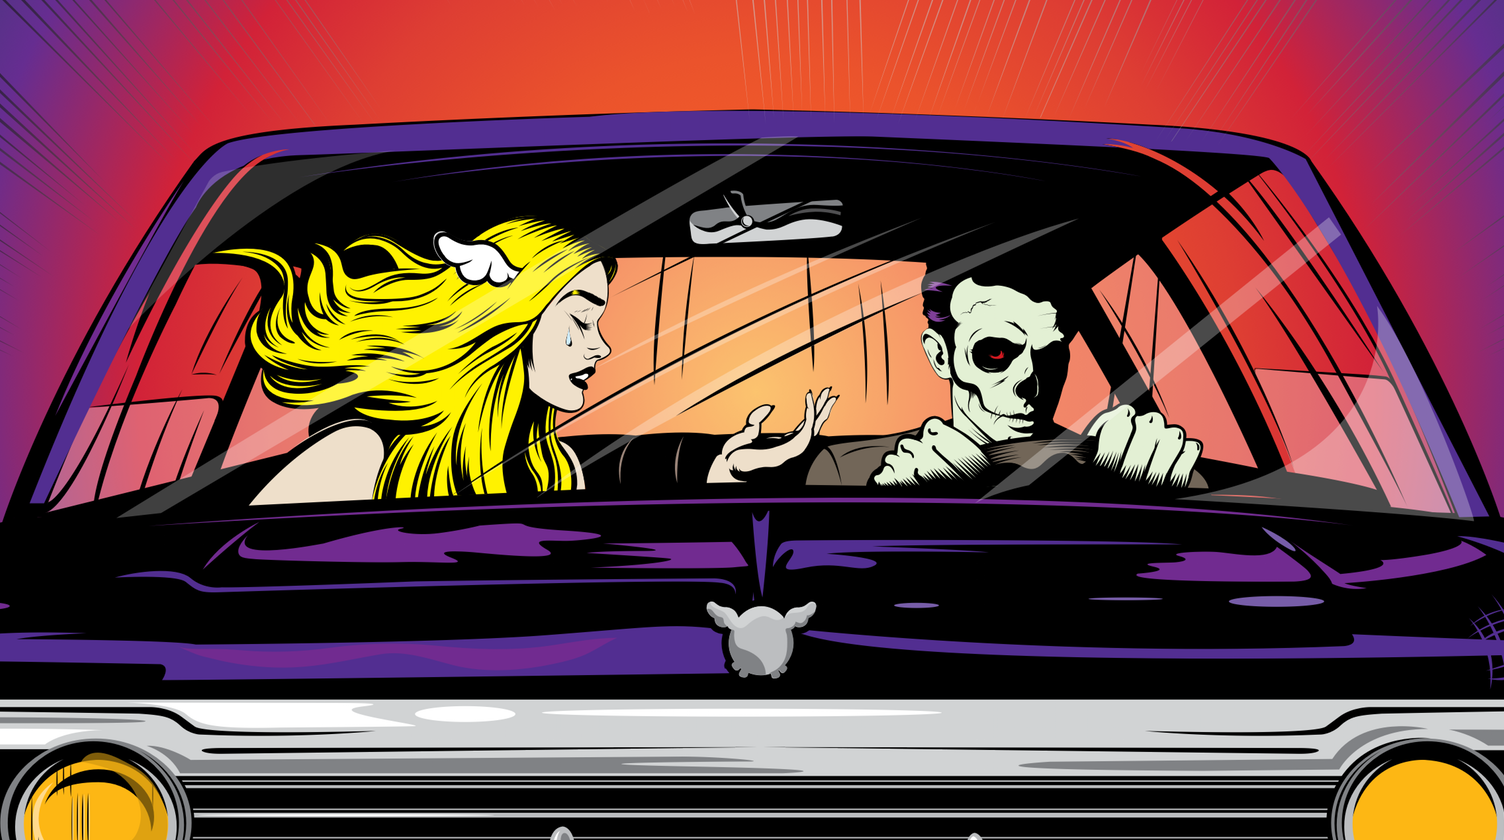 Blink 182 - Full Car - Blink 182 California Cover Art - HD Wallpaper 